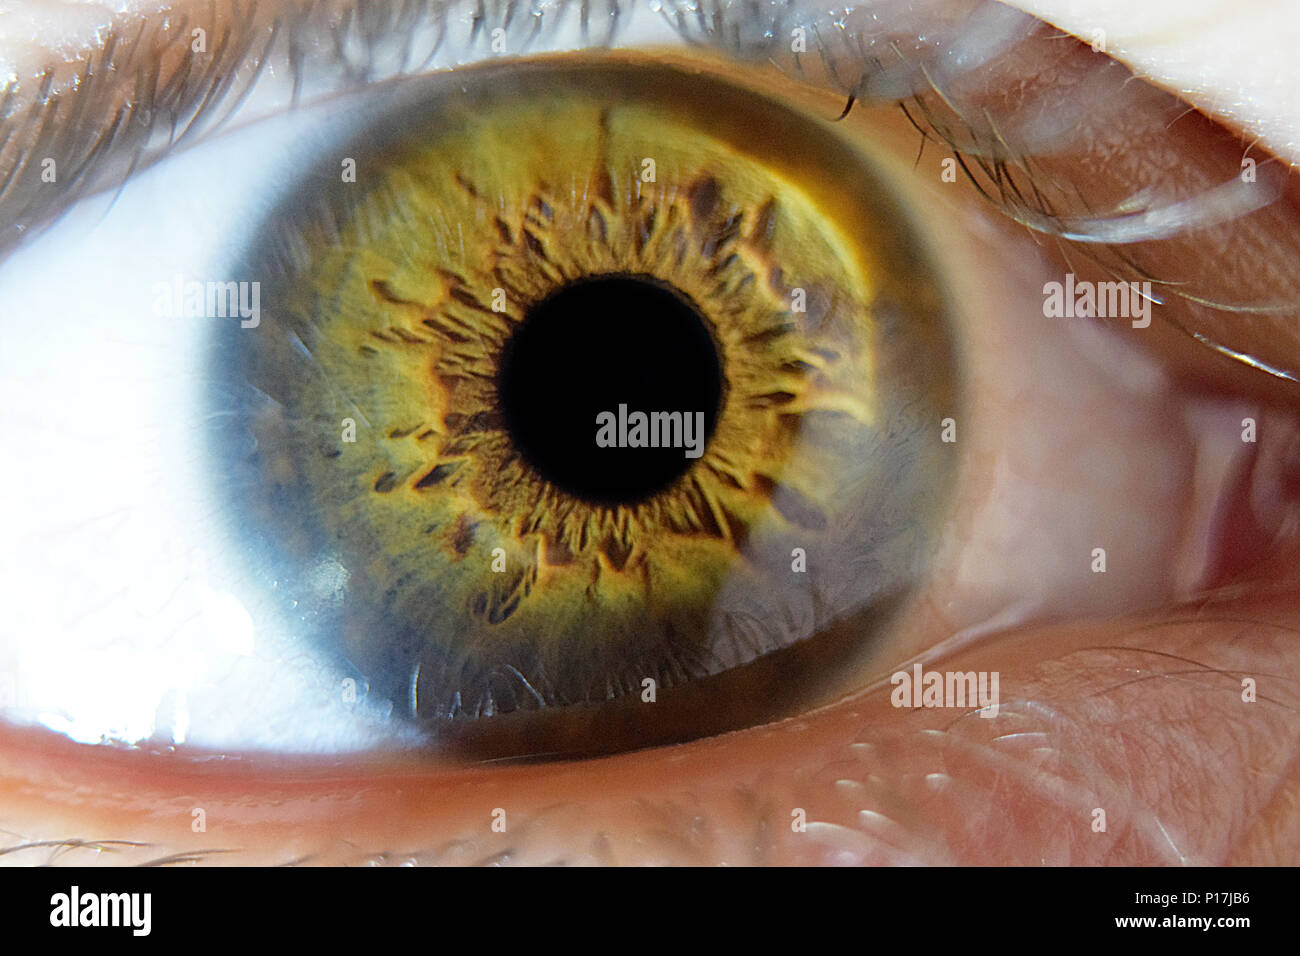 Marrone e verde immagini e fotografie stock ad alta risoluzione - Alamy